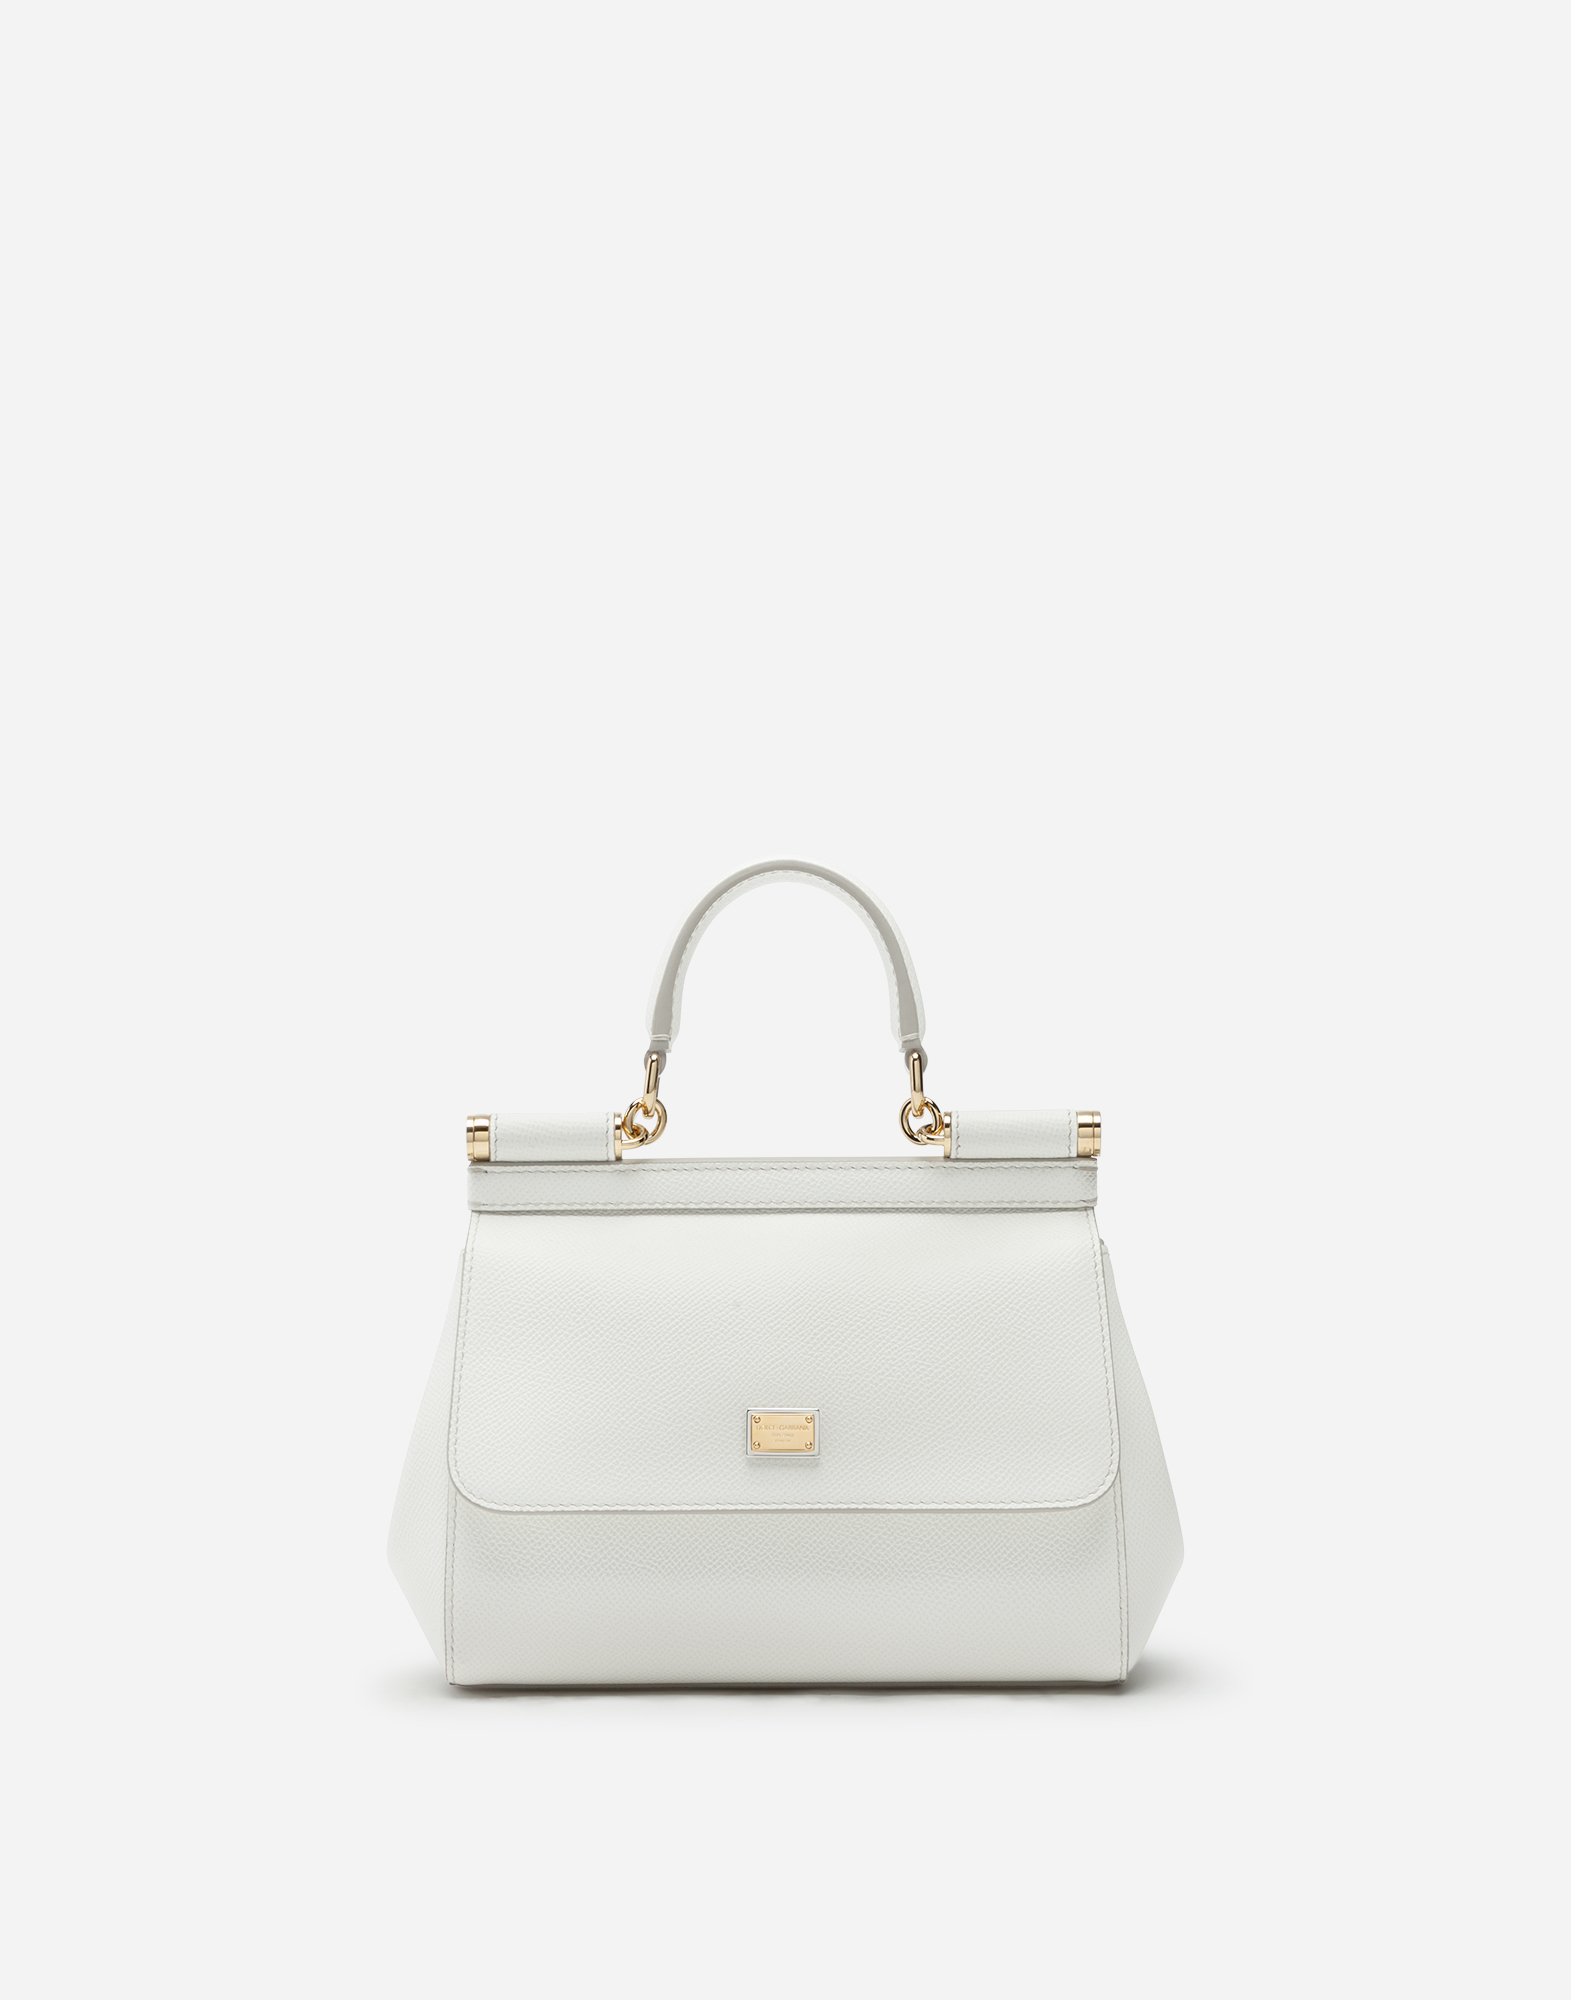 Medium Sicily handbag in White